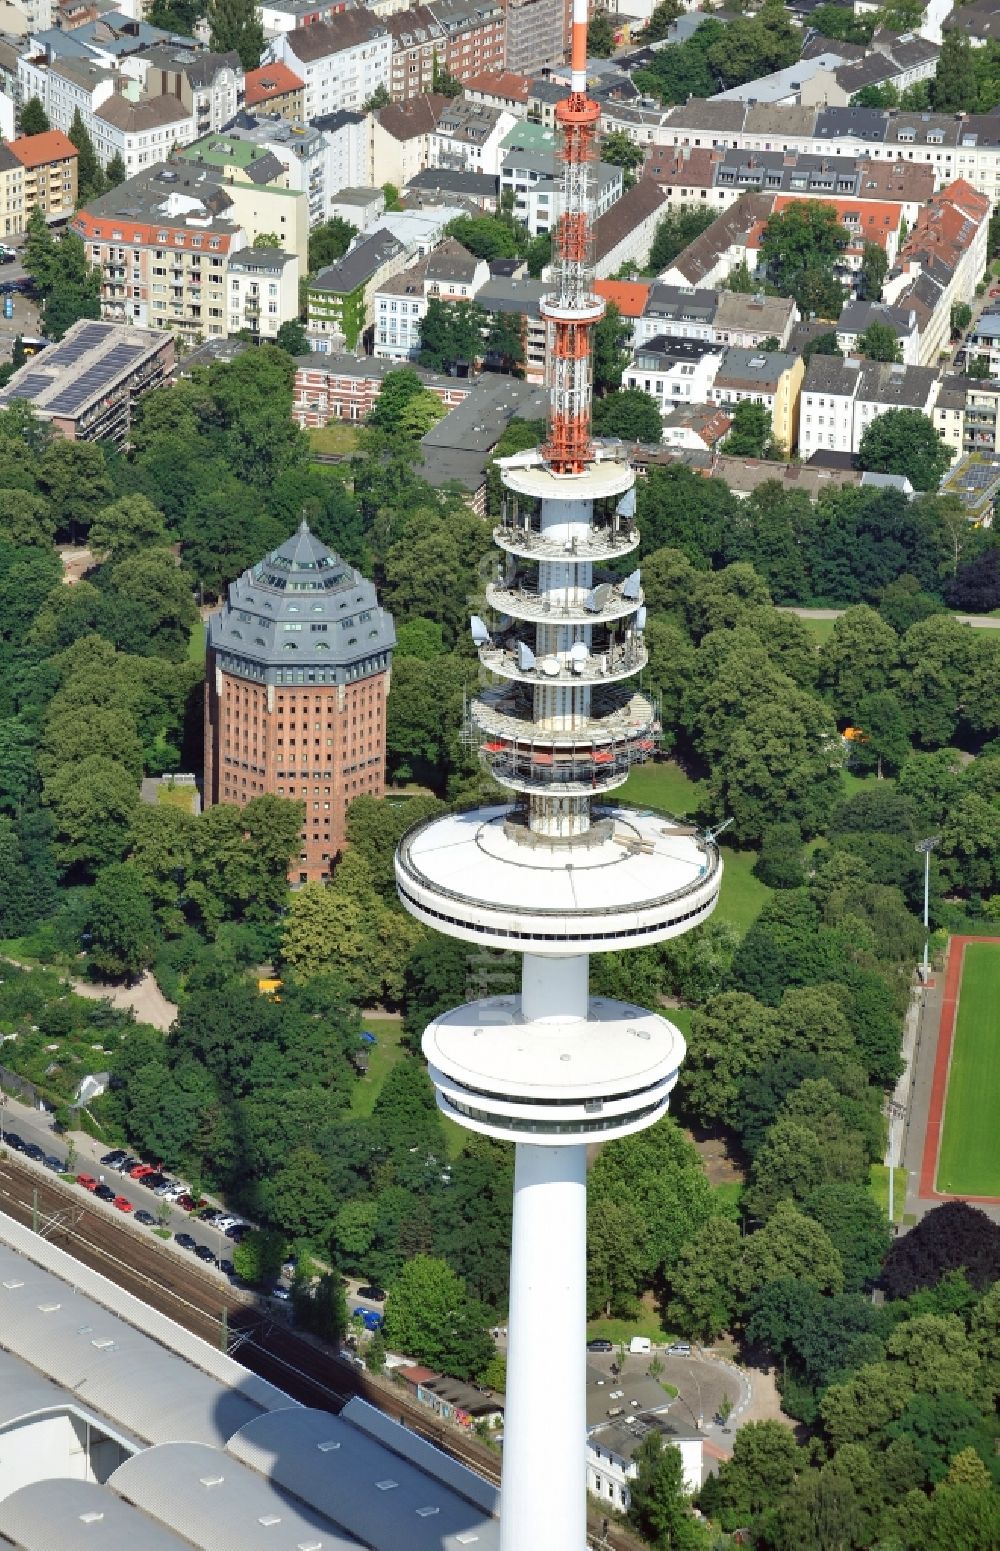 Luftaufnahme Hamburg - Blick auf den Heinrich-Hertz-Turm in Hamburg